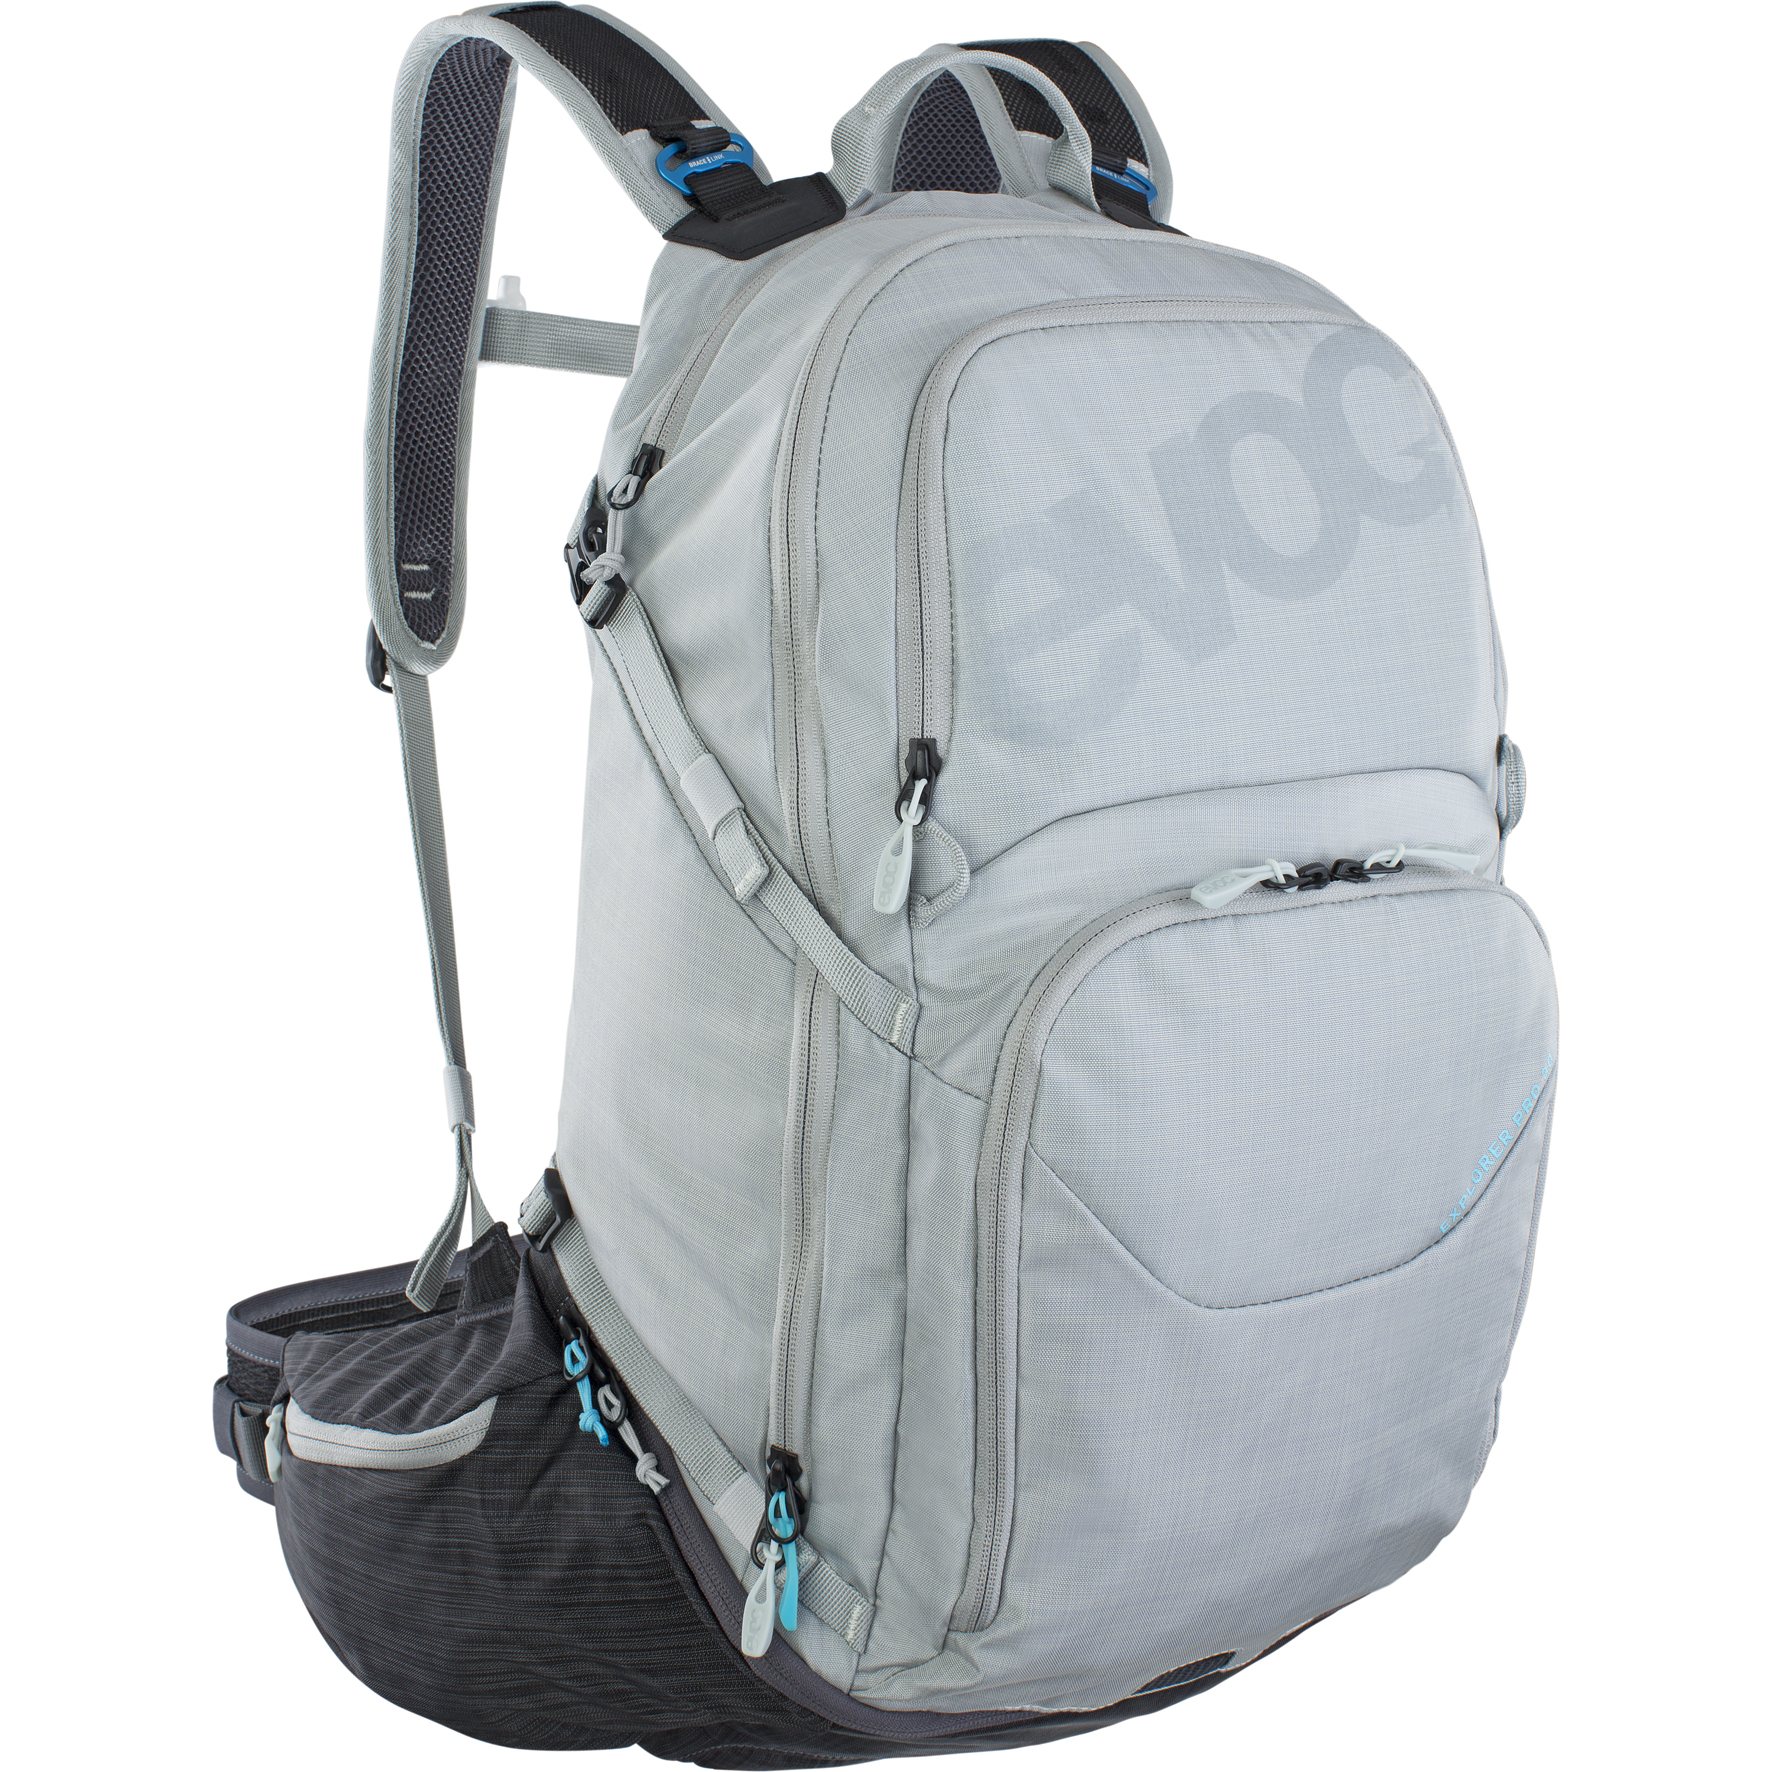 Image of EVOC Explorer Pro Backpack - 30 L - Silver / Carbon Grey